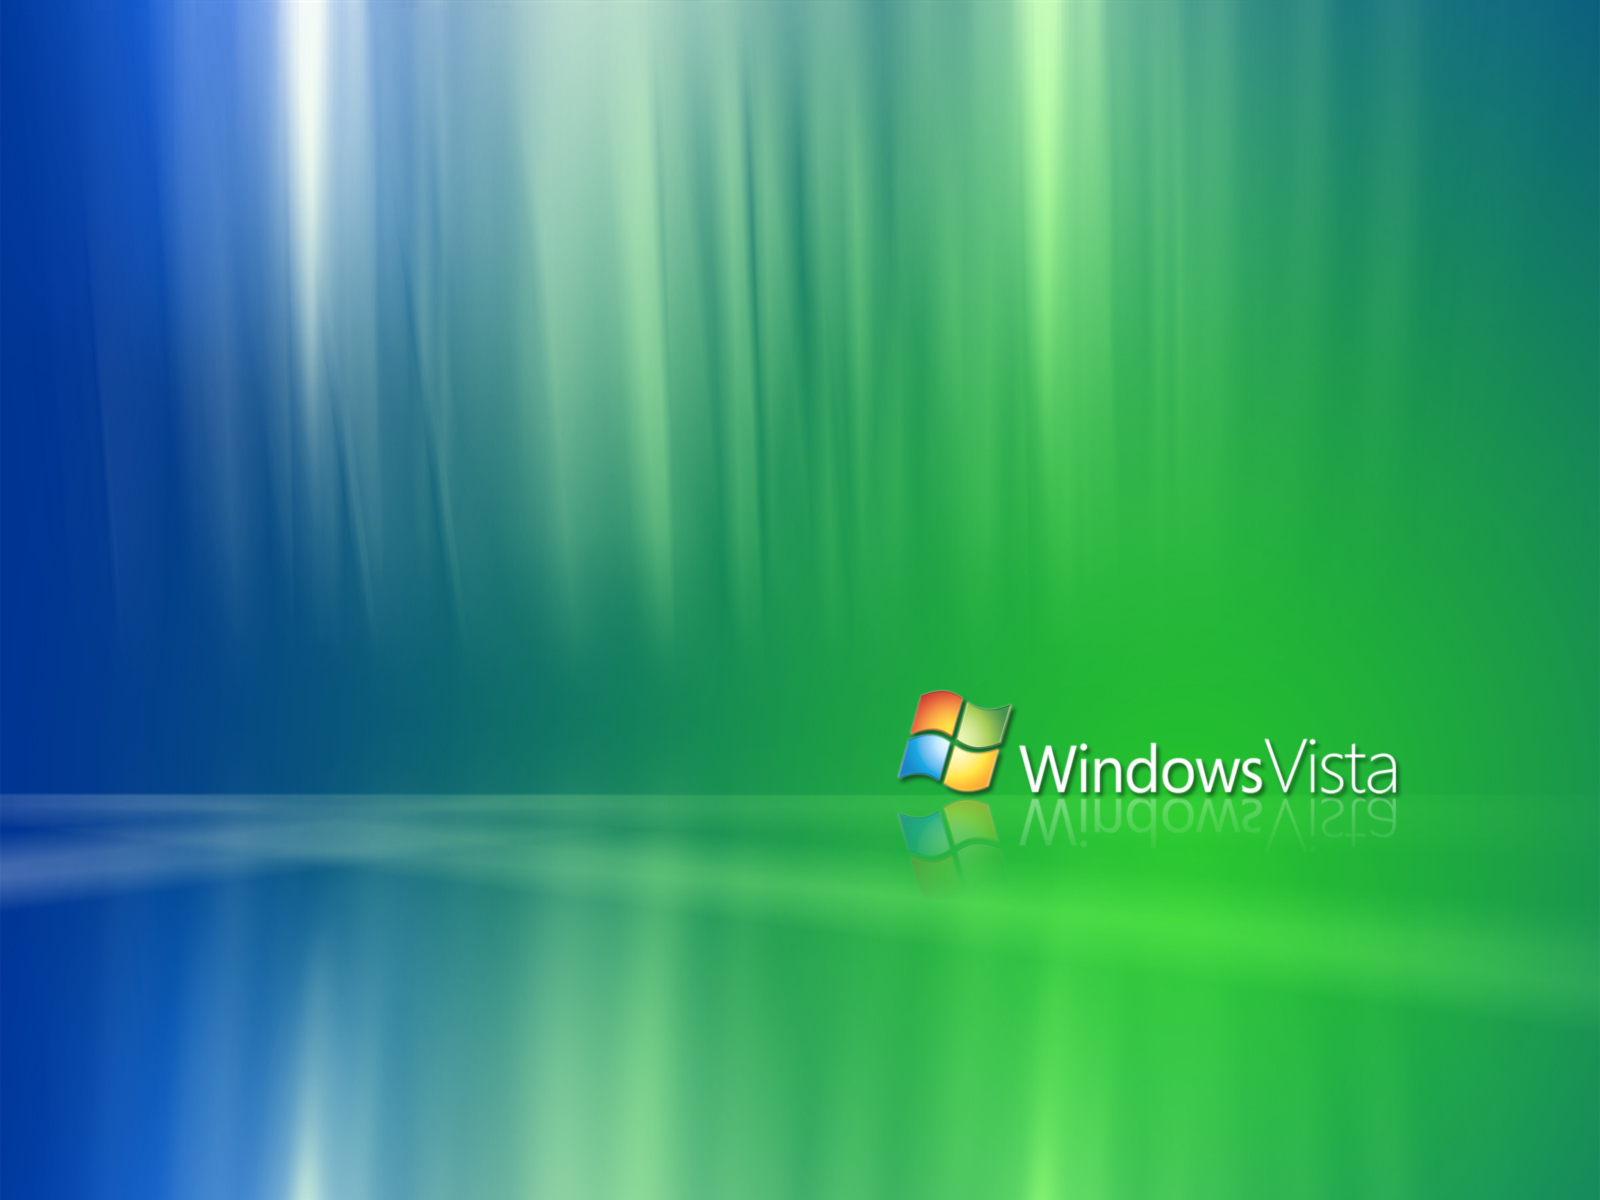 Wallpaper De Windows Vista